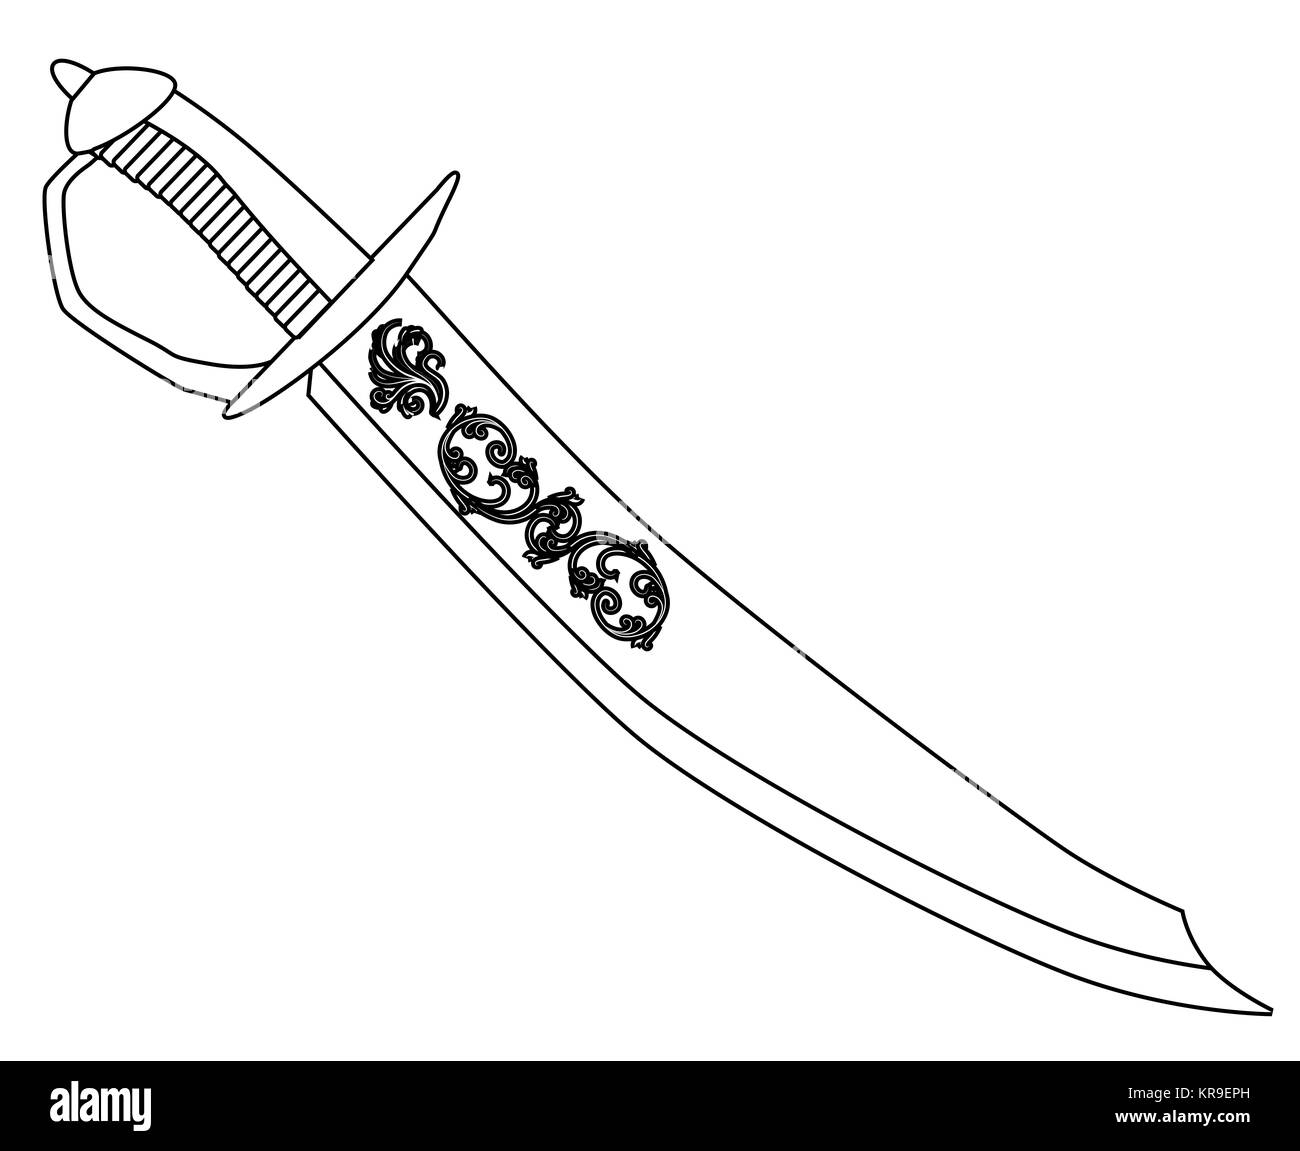 Пиратский меч раскраска